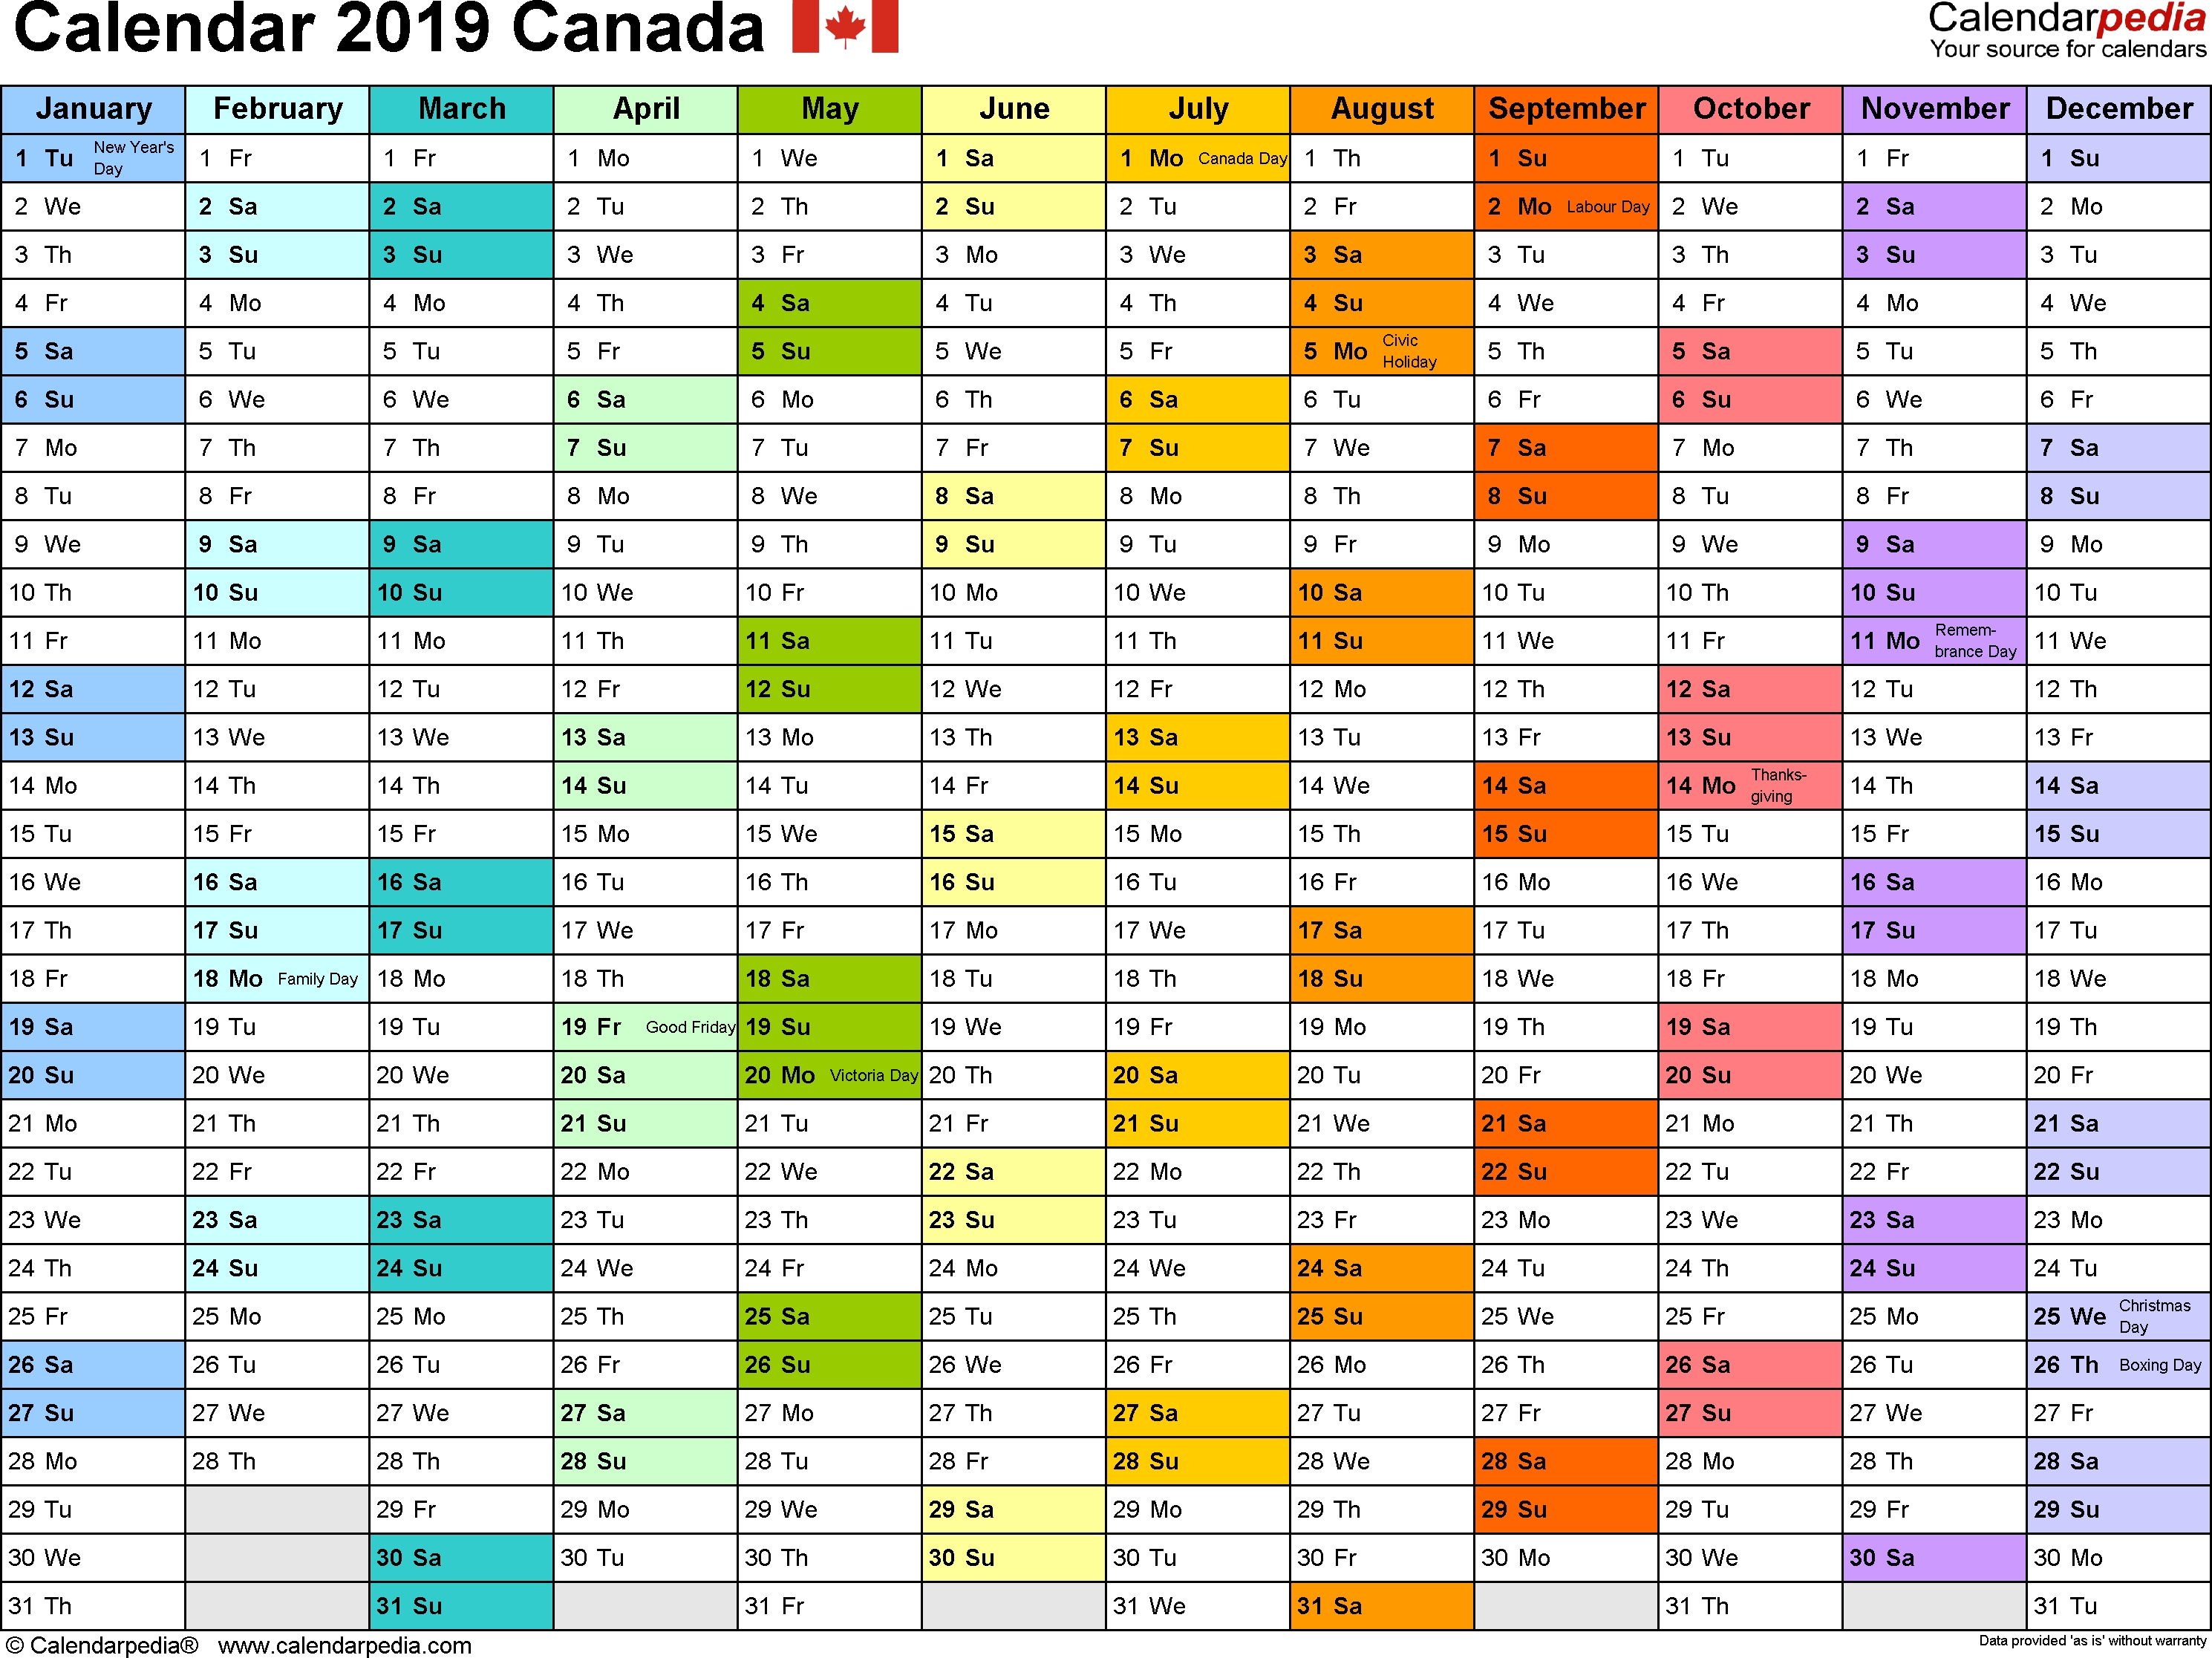 2019-calendar-canada-qualads